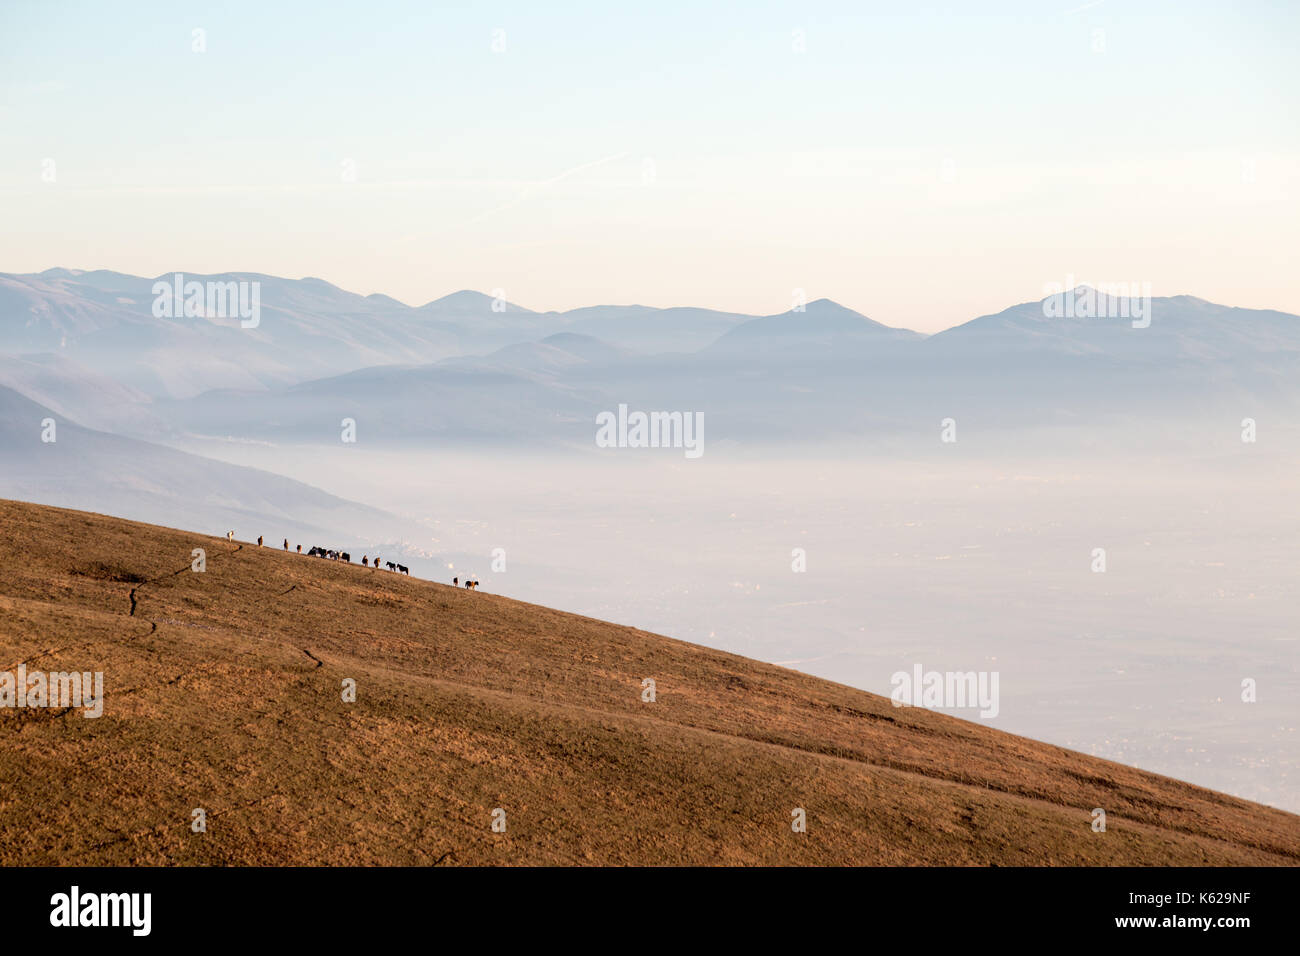 Einige Pferde auf einem Berg, über ein Meer von Nebel Füllen der Valle Umbra, mit warmen, goldenen Stunden Farben Stockfoto